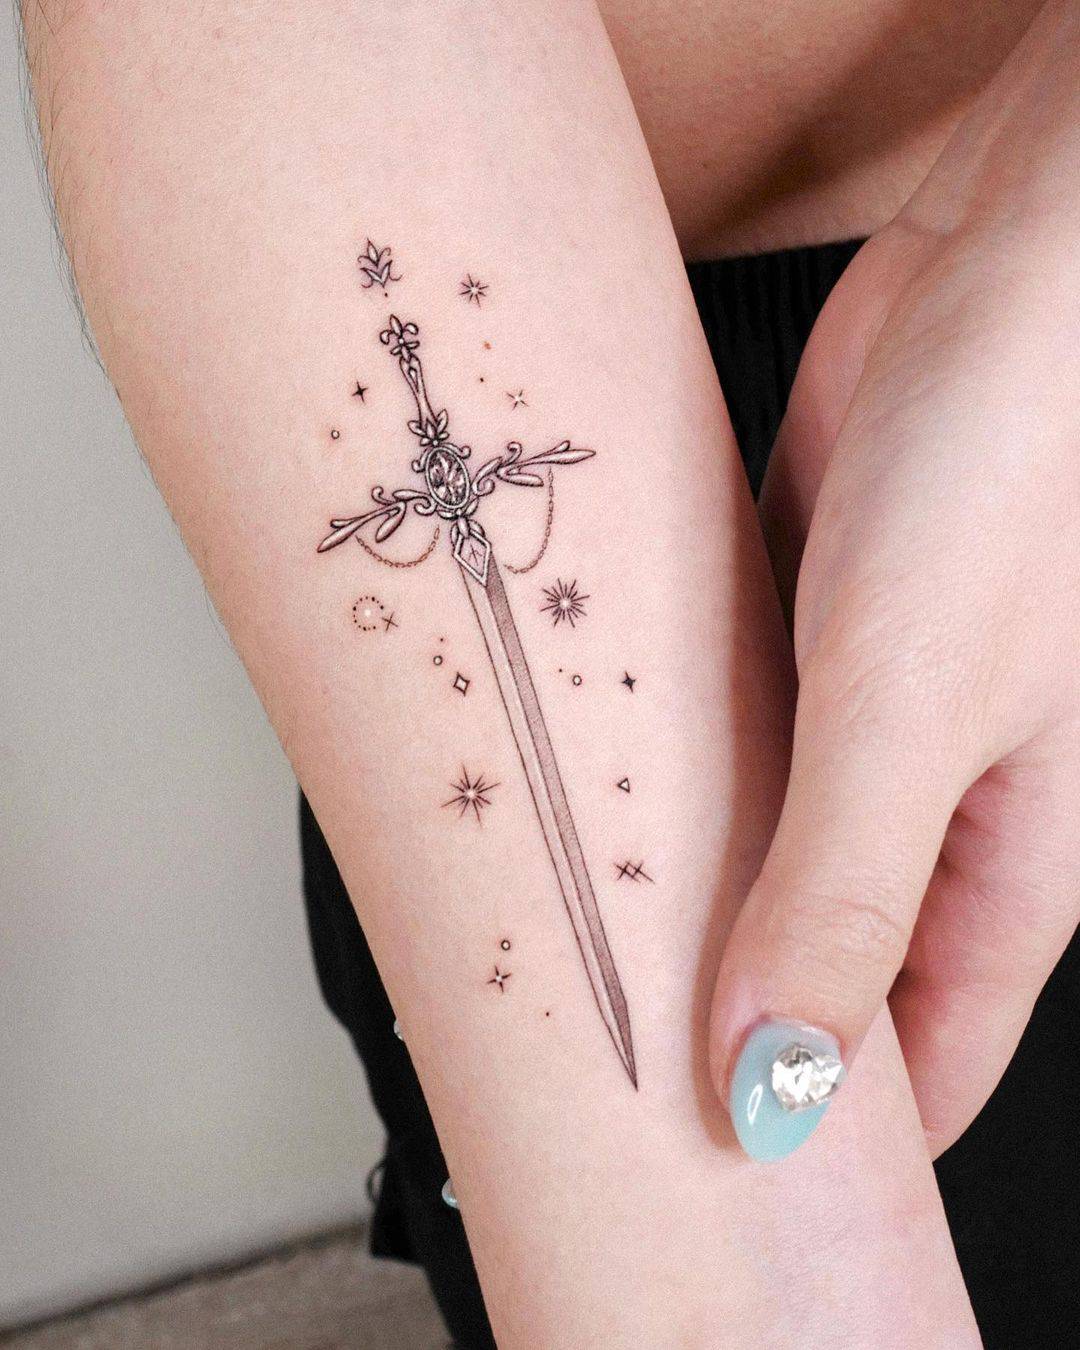 Star tattoo by tattooist solar